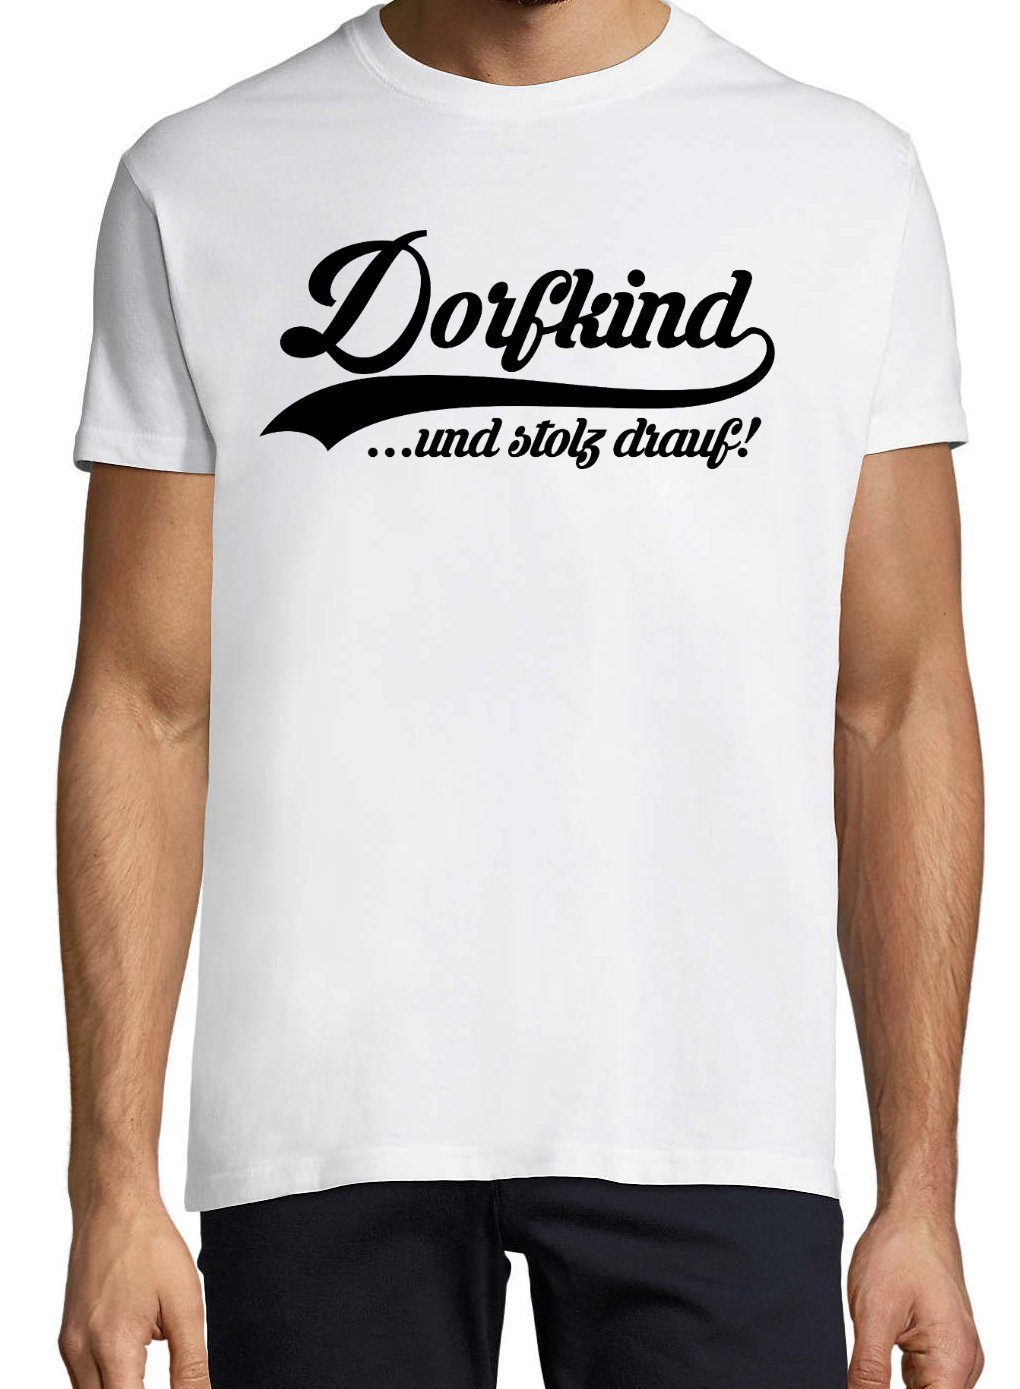 mit Print-Shirt Designz Youth lustigem Herren Weiß T-Shirt Spruch Dorfkind